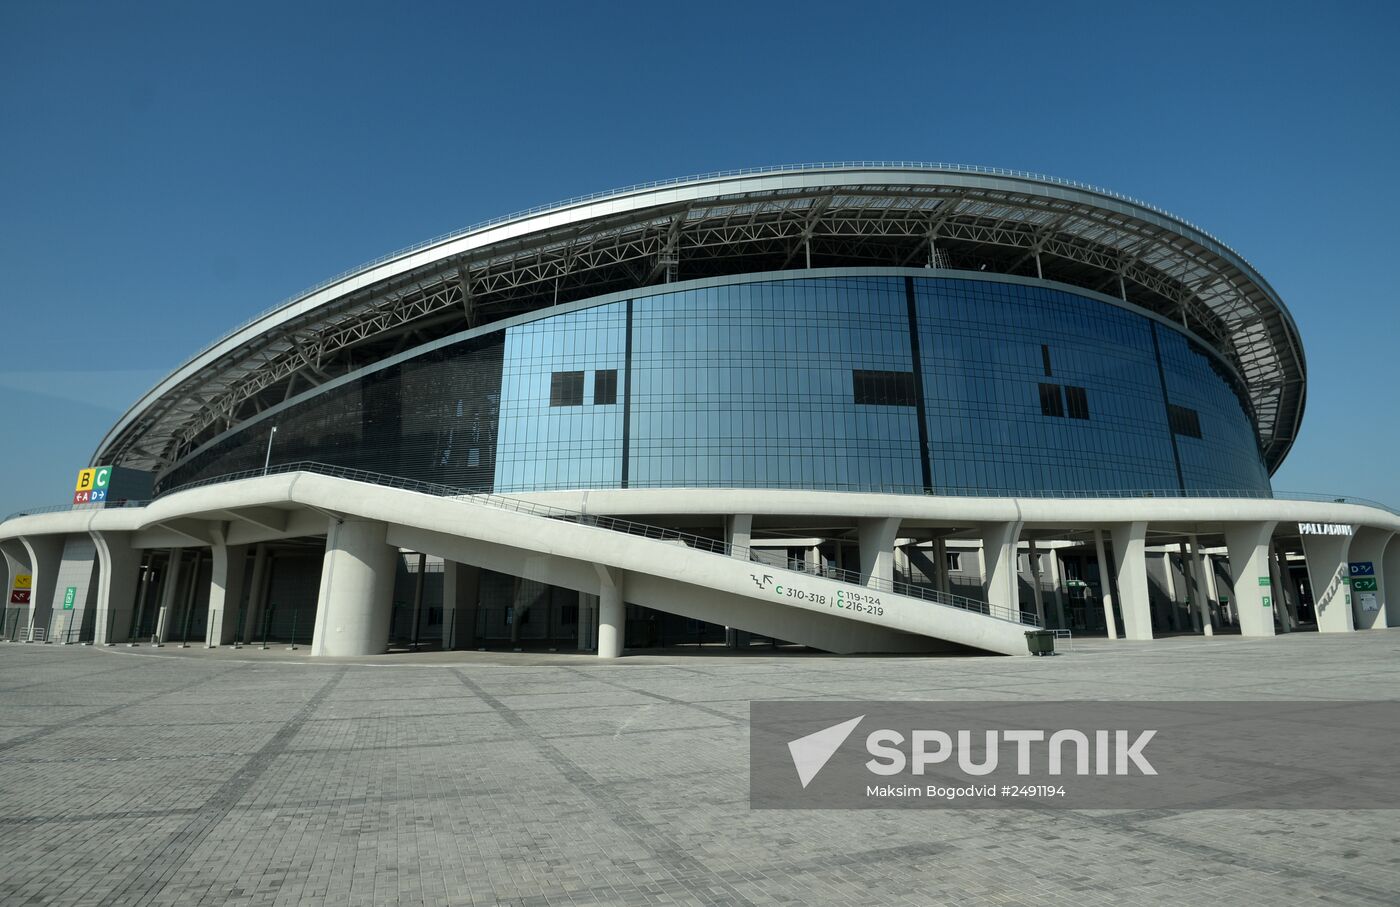 2015 World Aquatics Championships facilities